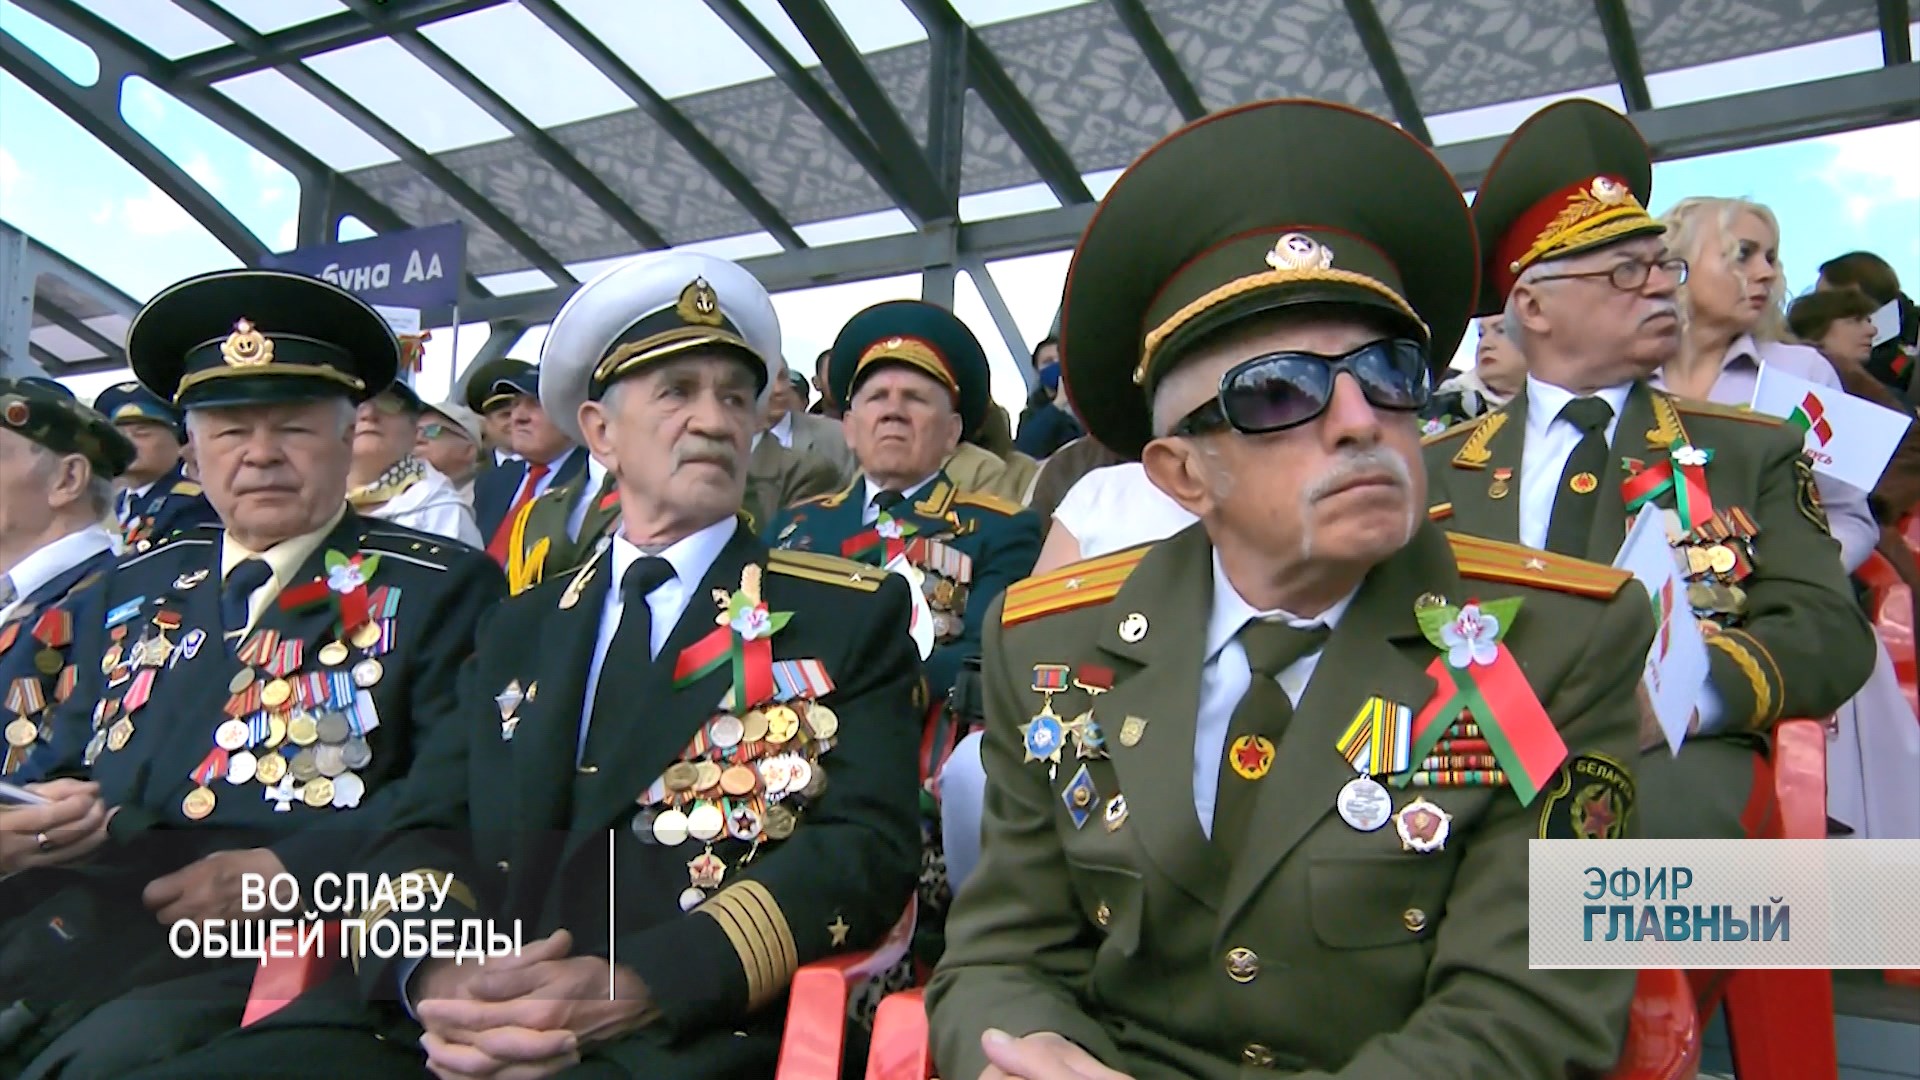 Парад Победы в Минске 2020. Эта новость стала номером один у зарубежных СМИ